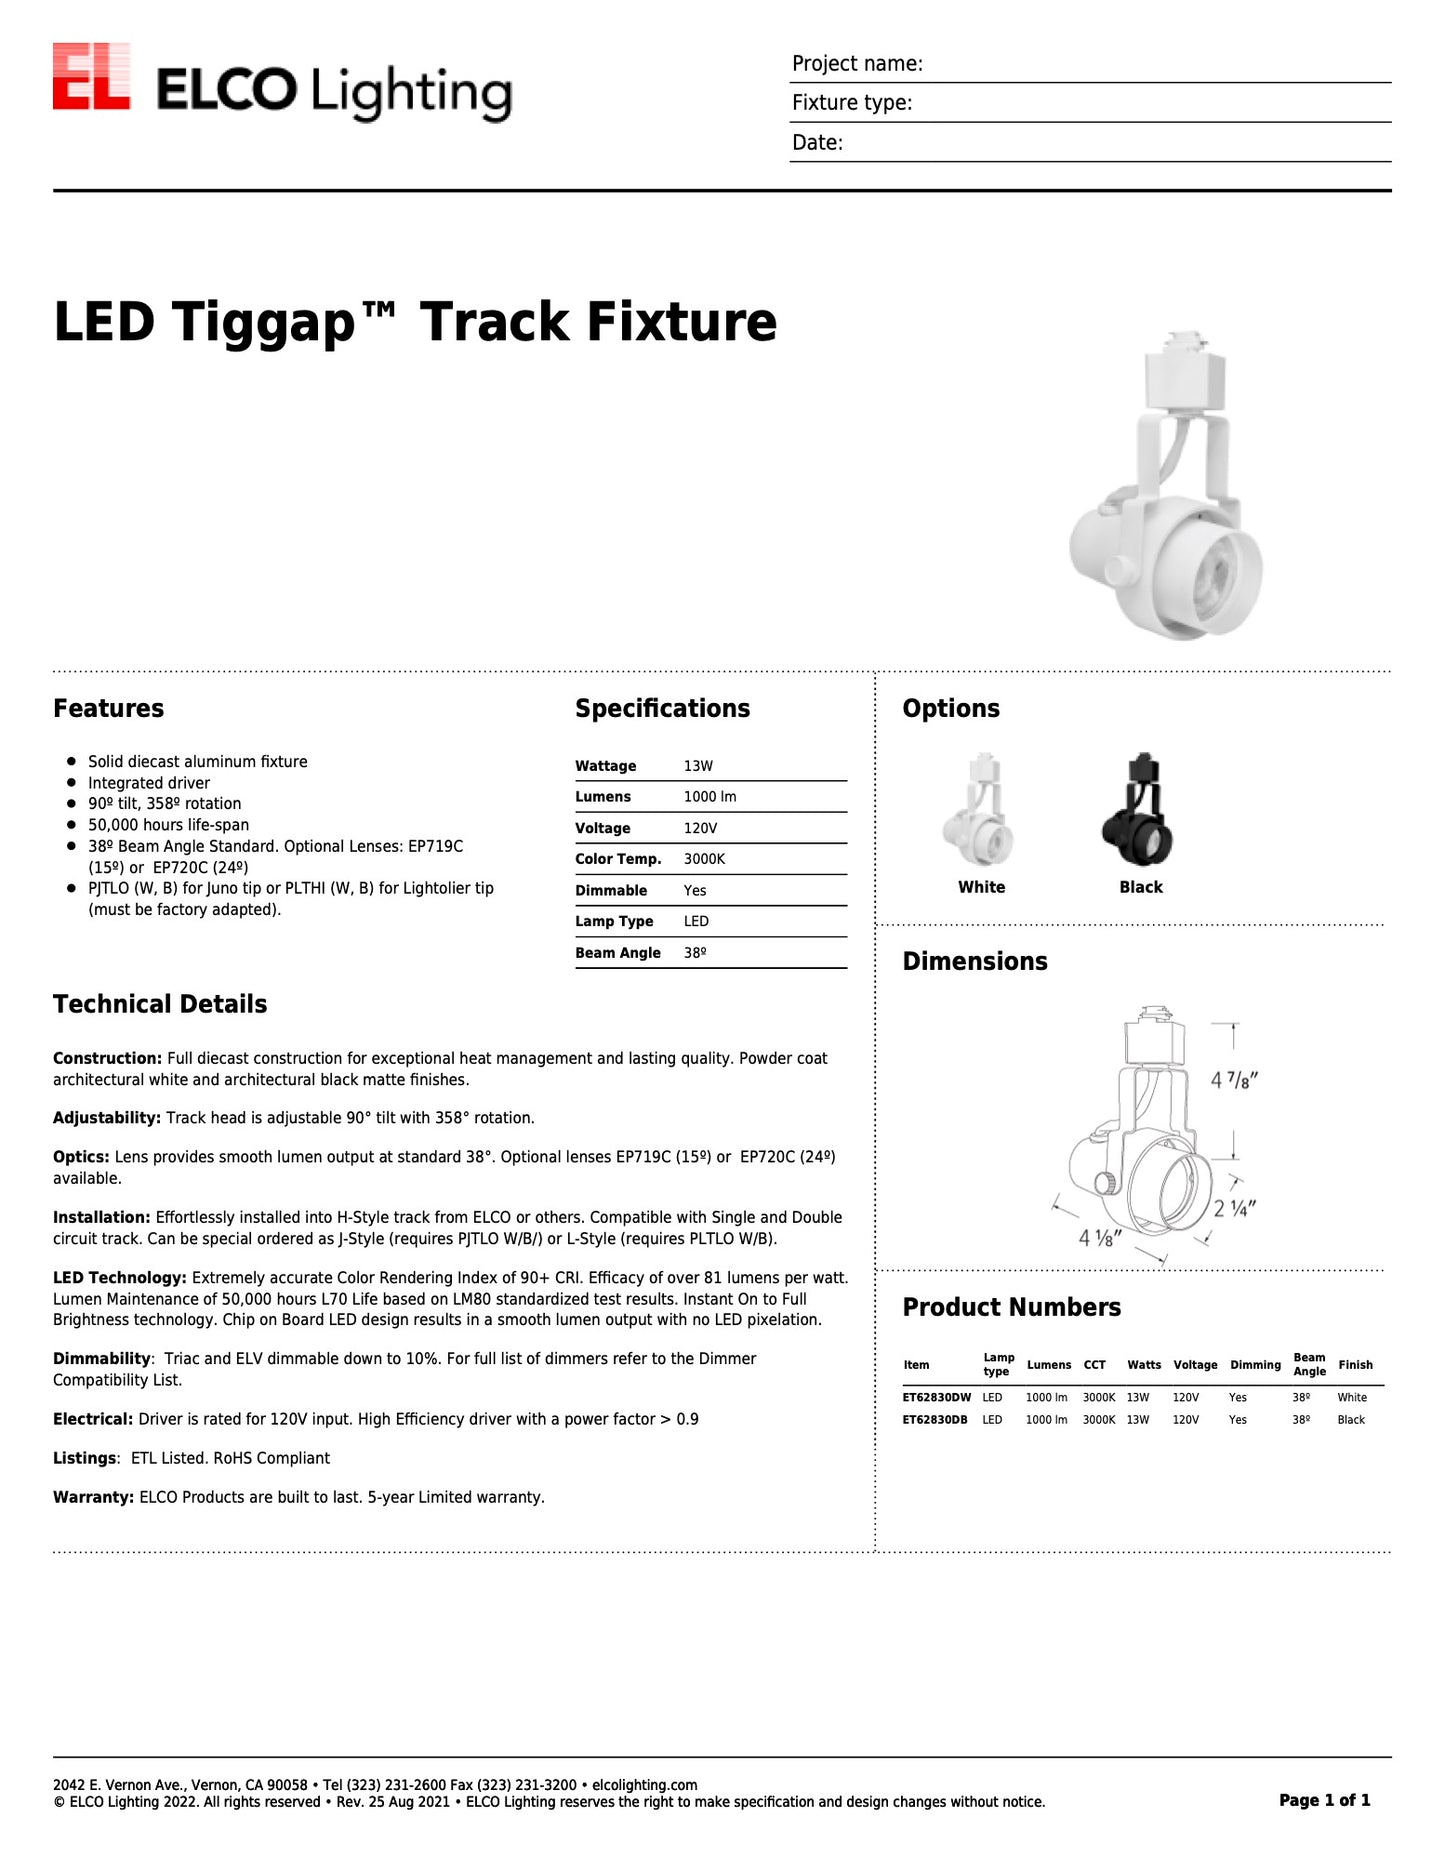 LED Tiggap Track Fixture